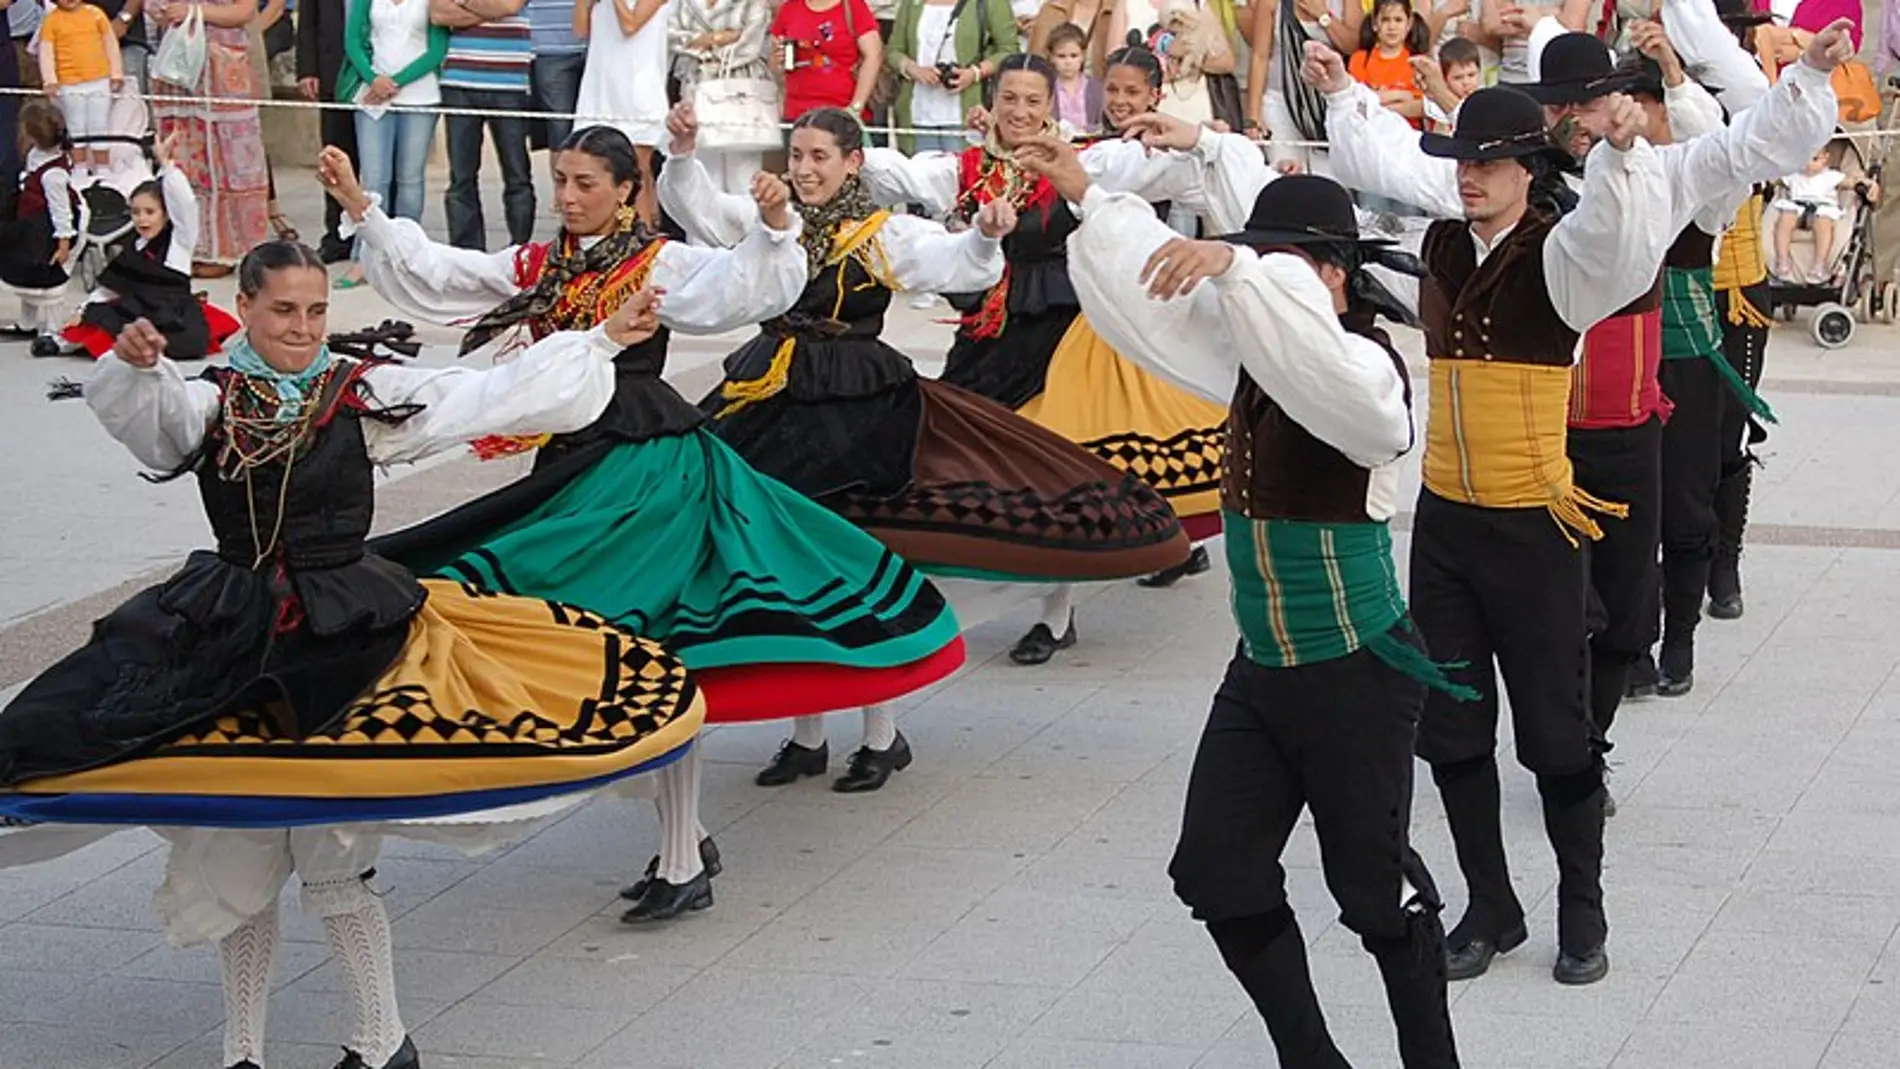 La vuelta a España a través de sus bailes regionales